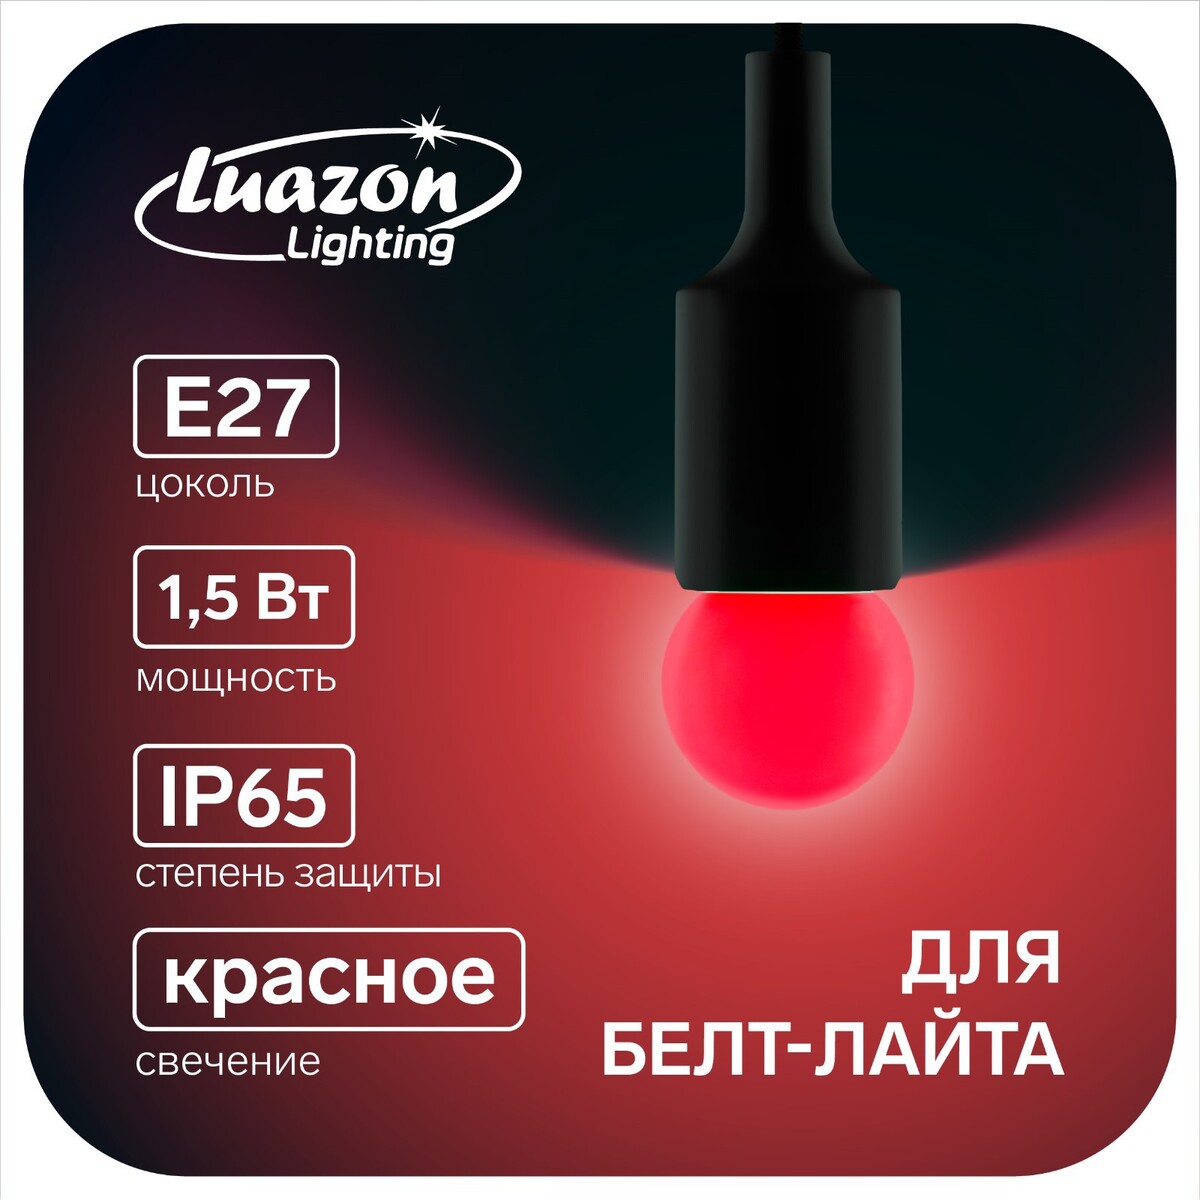 Лампа светодиодная luazon lighting, g45, е27, 1.5 вт, для белт-лайта, красная, наб 20 шт умная лампа яндекс работает с алисой светодиодная ная 4 8 вт 430 лм е14 220 в